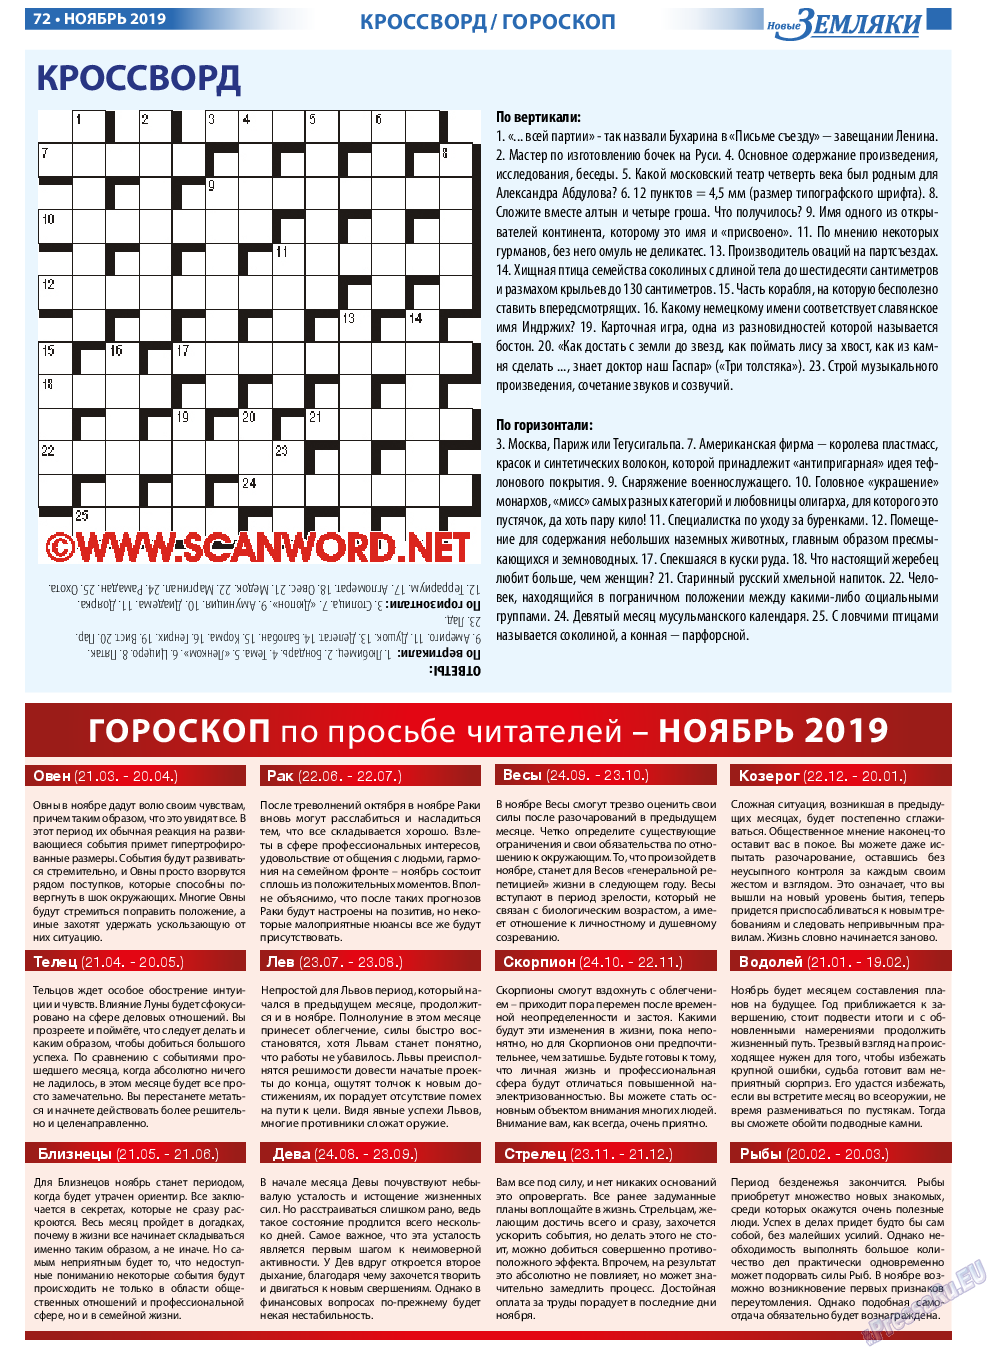 Новые Земляки, газета. 2019 №11 стр.72